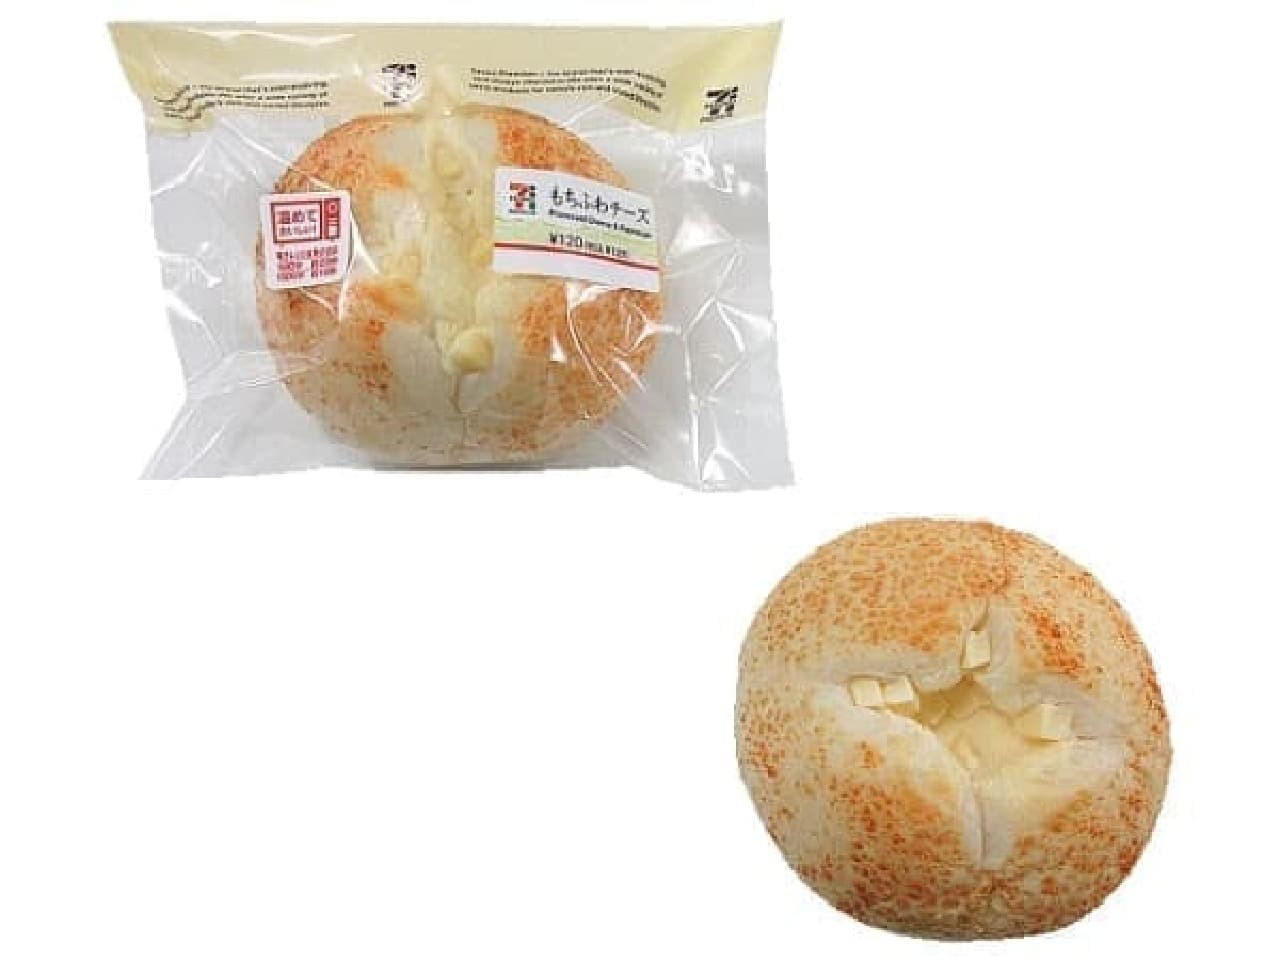 7-ELEVEN "Mochifuwa Cheese"